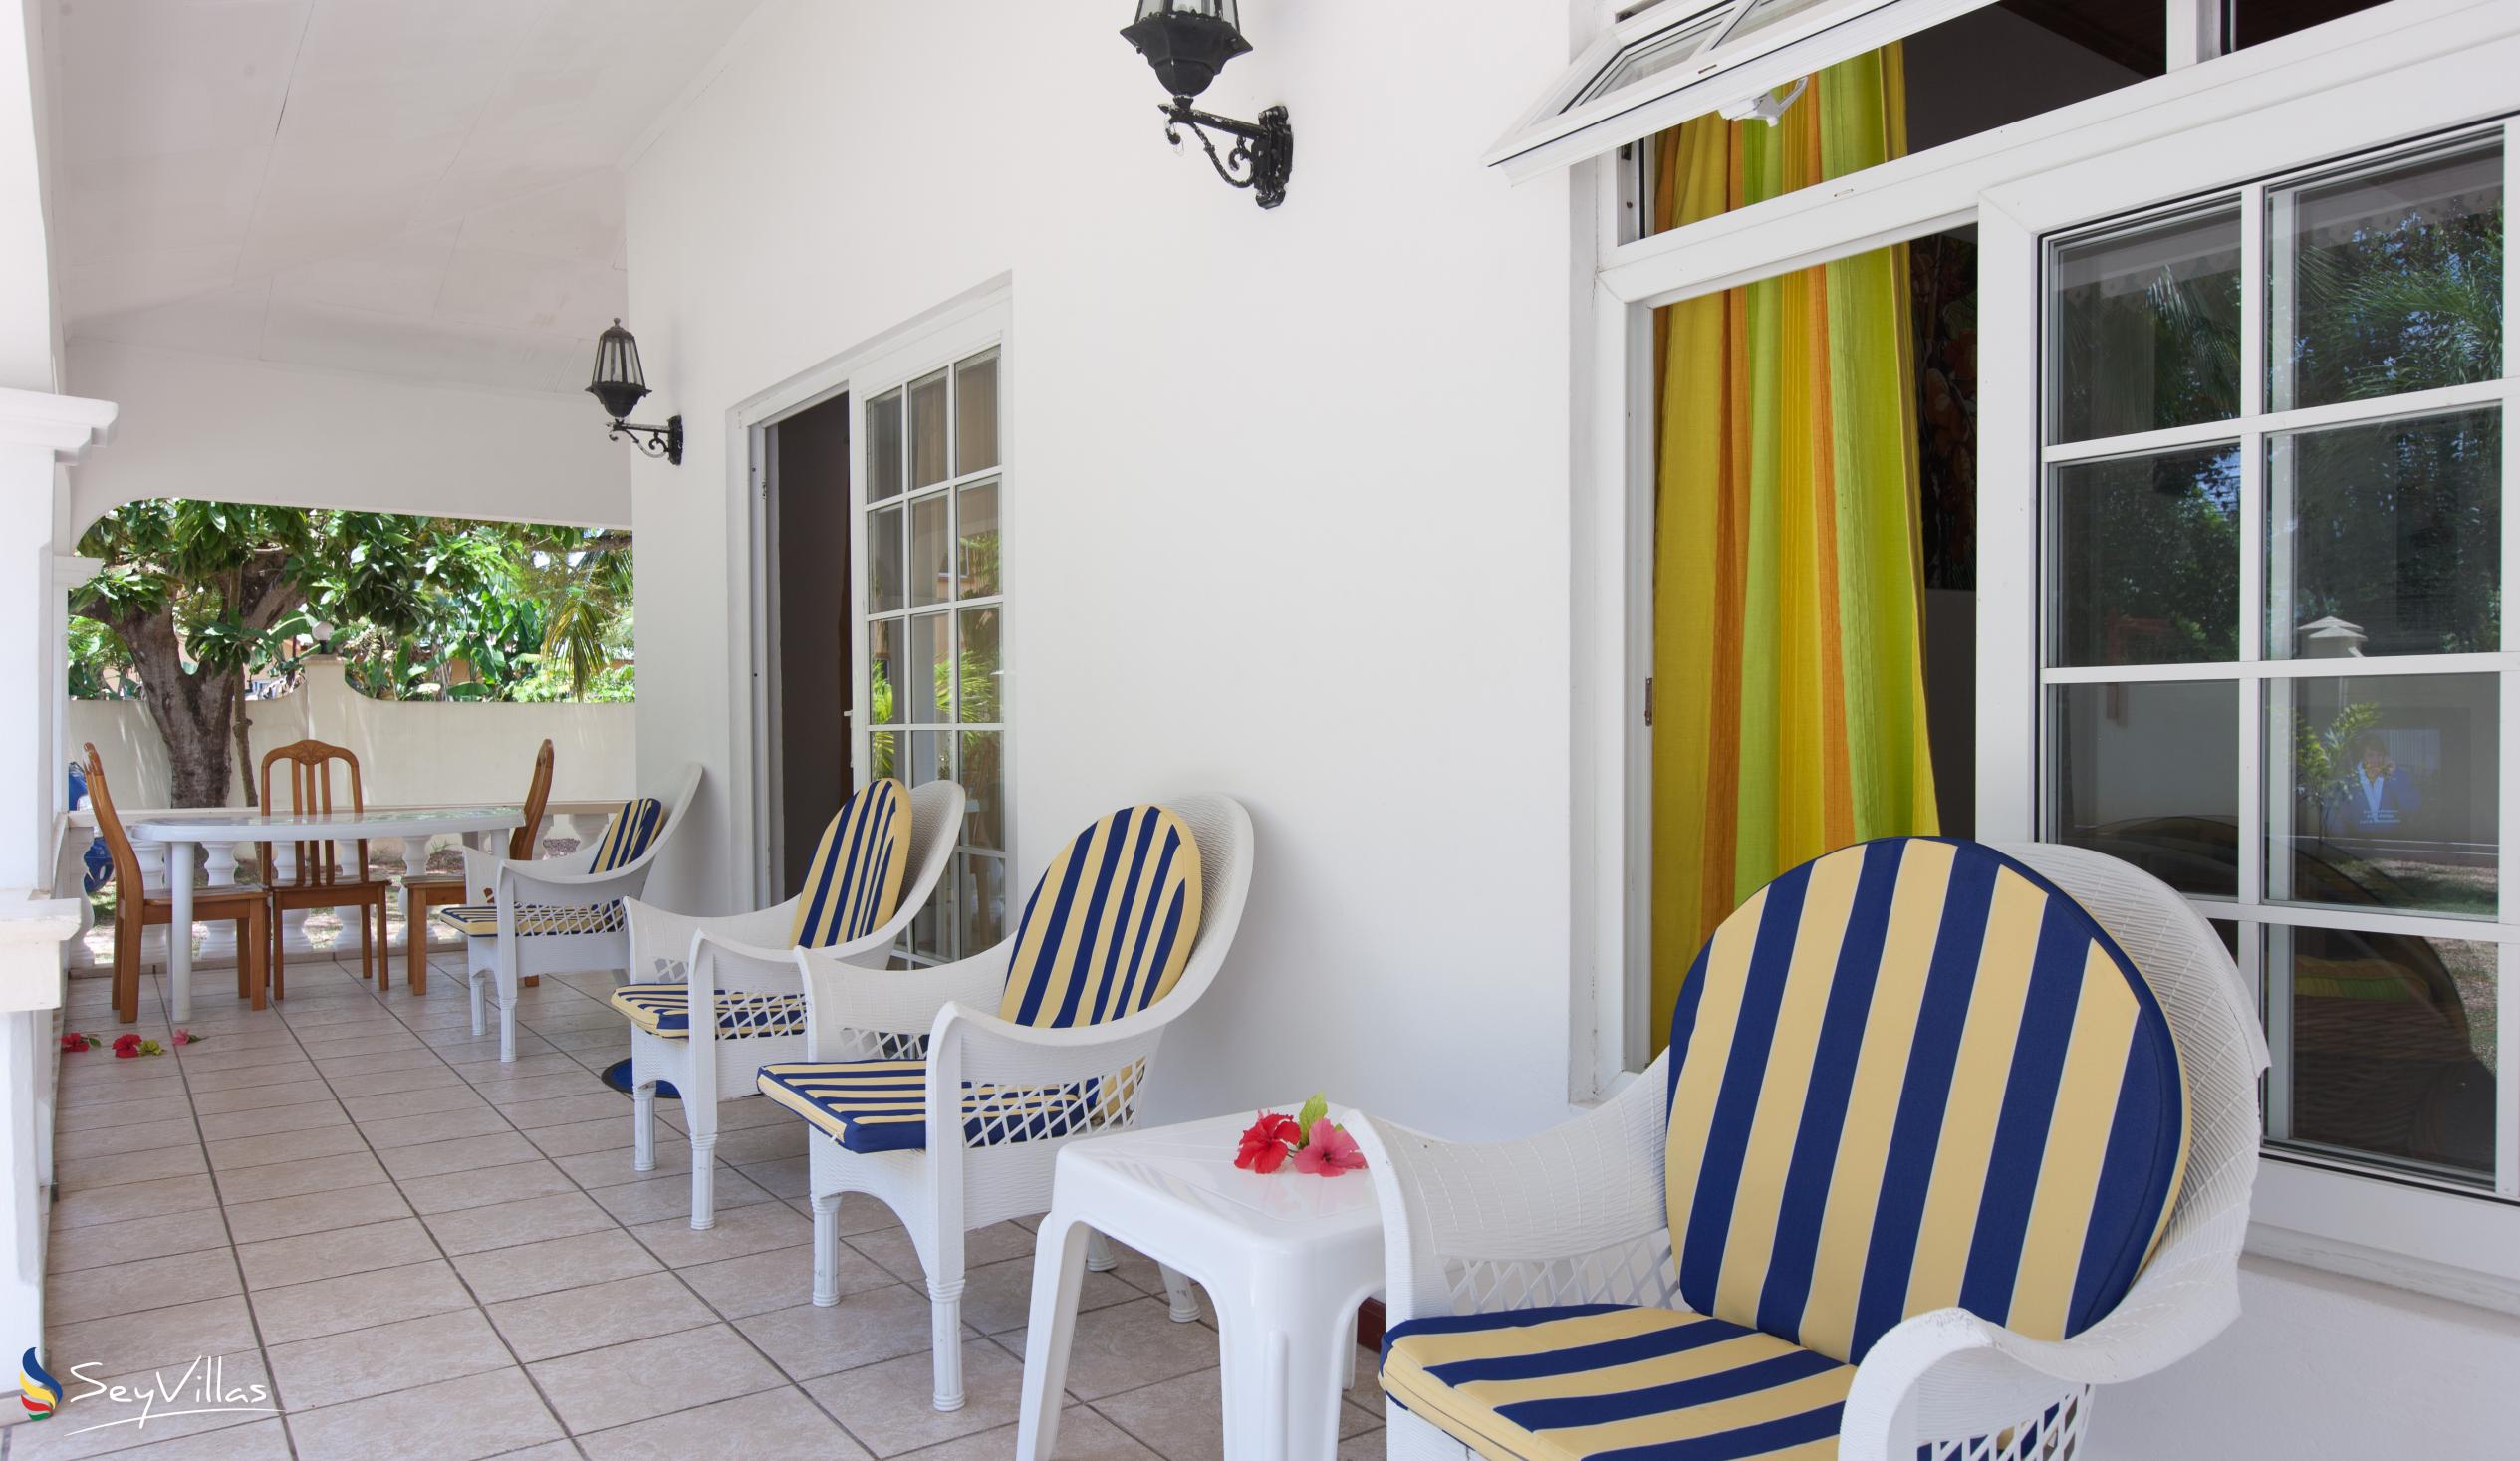 Foto 13: Villa Confort - Aussenbereich - Praslin (Seychellen)